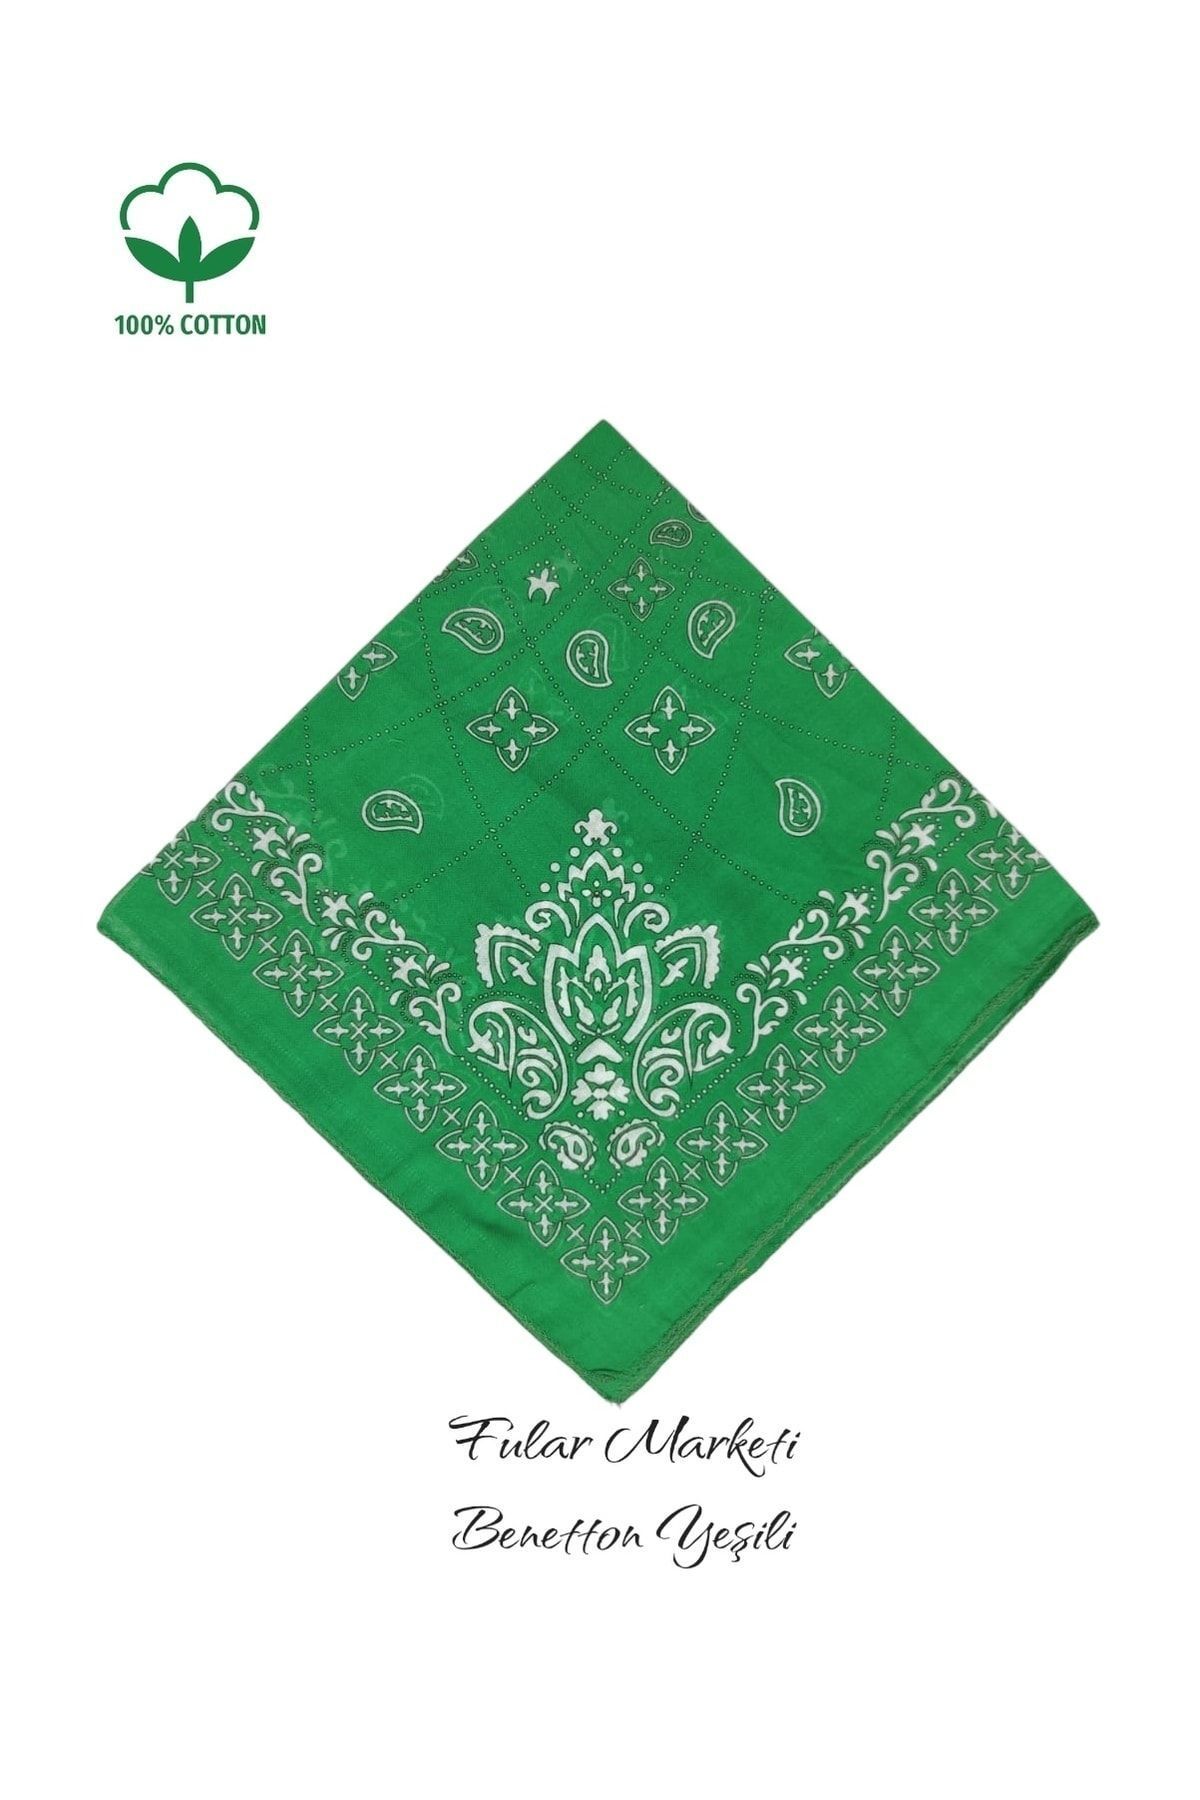 Fular Marketi %100 Pamuklu Elegance Benetton Yeşili Sepete 5 Adet Ekle 4 Adet Öde Kampanyalı 1 Adet Fiyatıdır